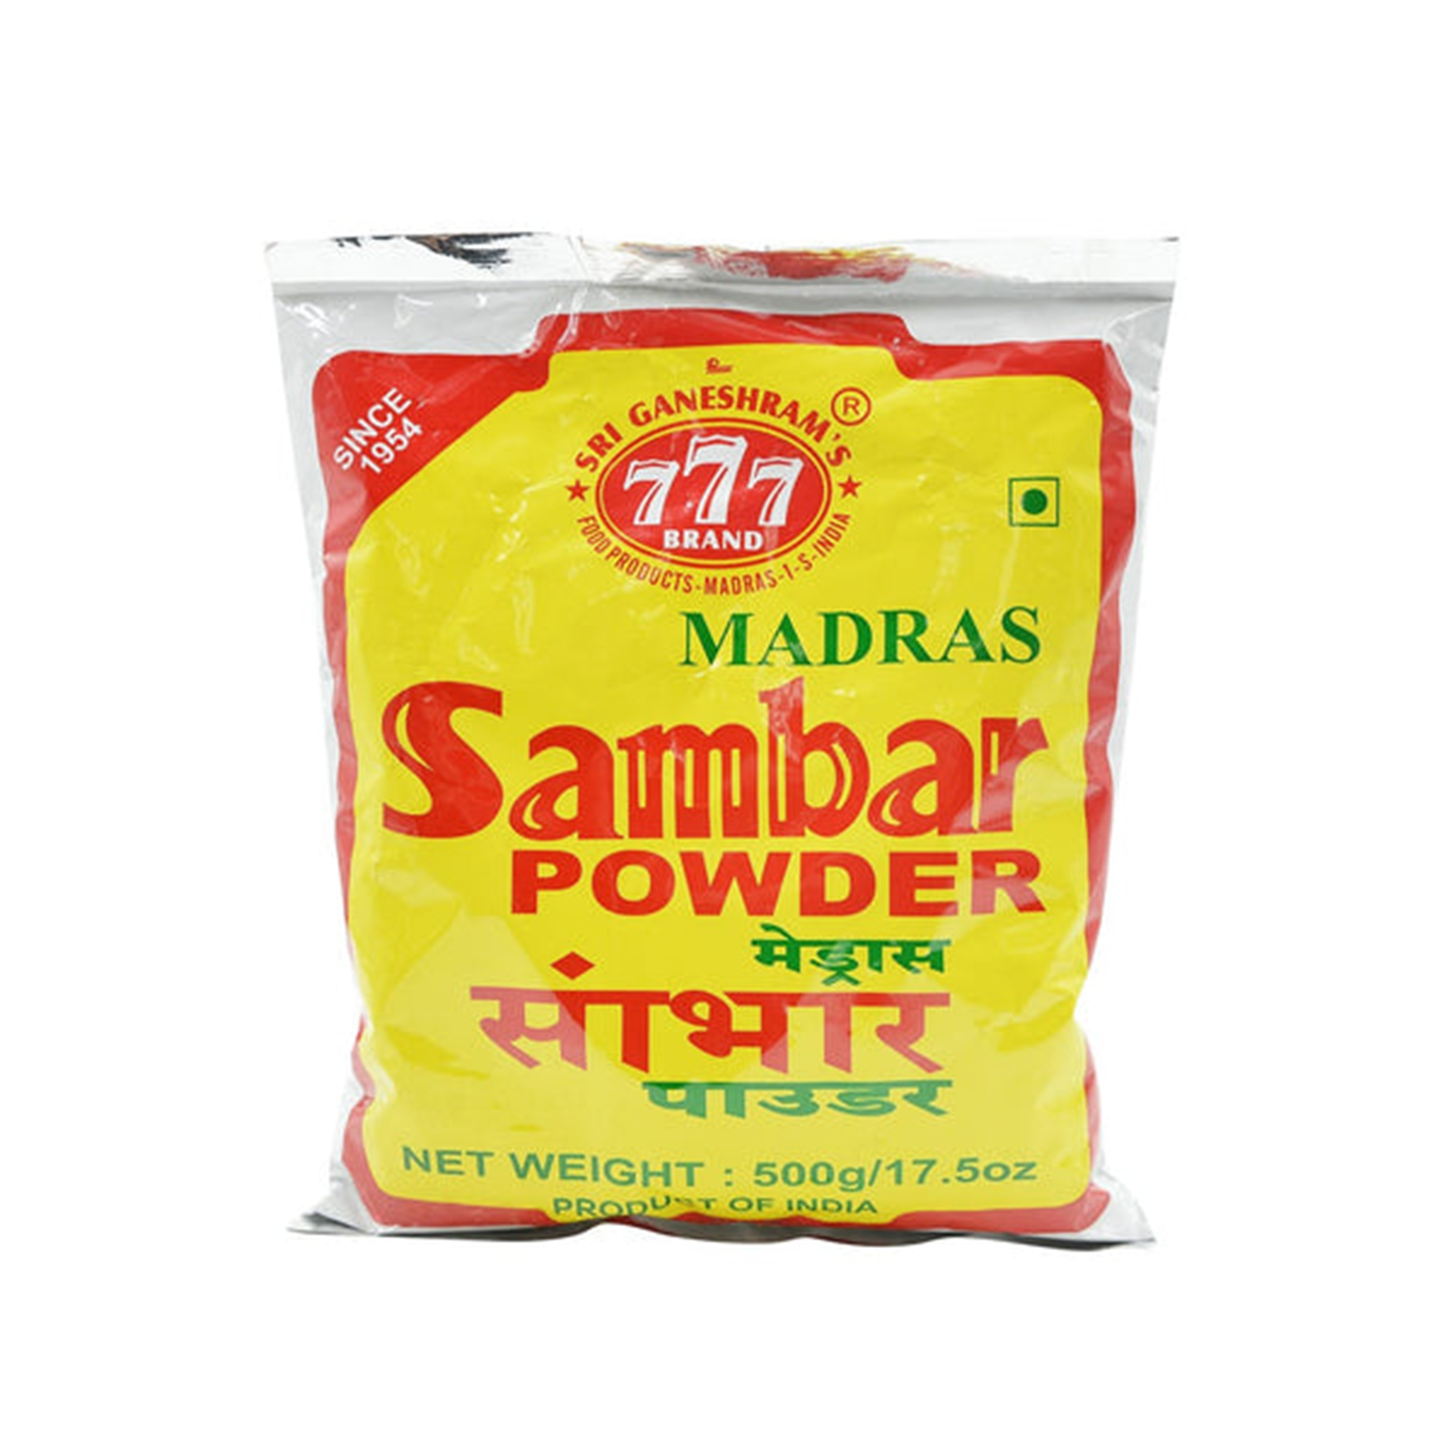 777 Sambar Powder VishalBazar